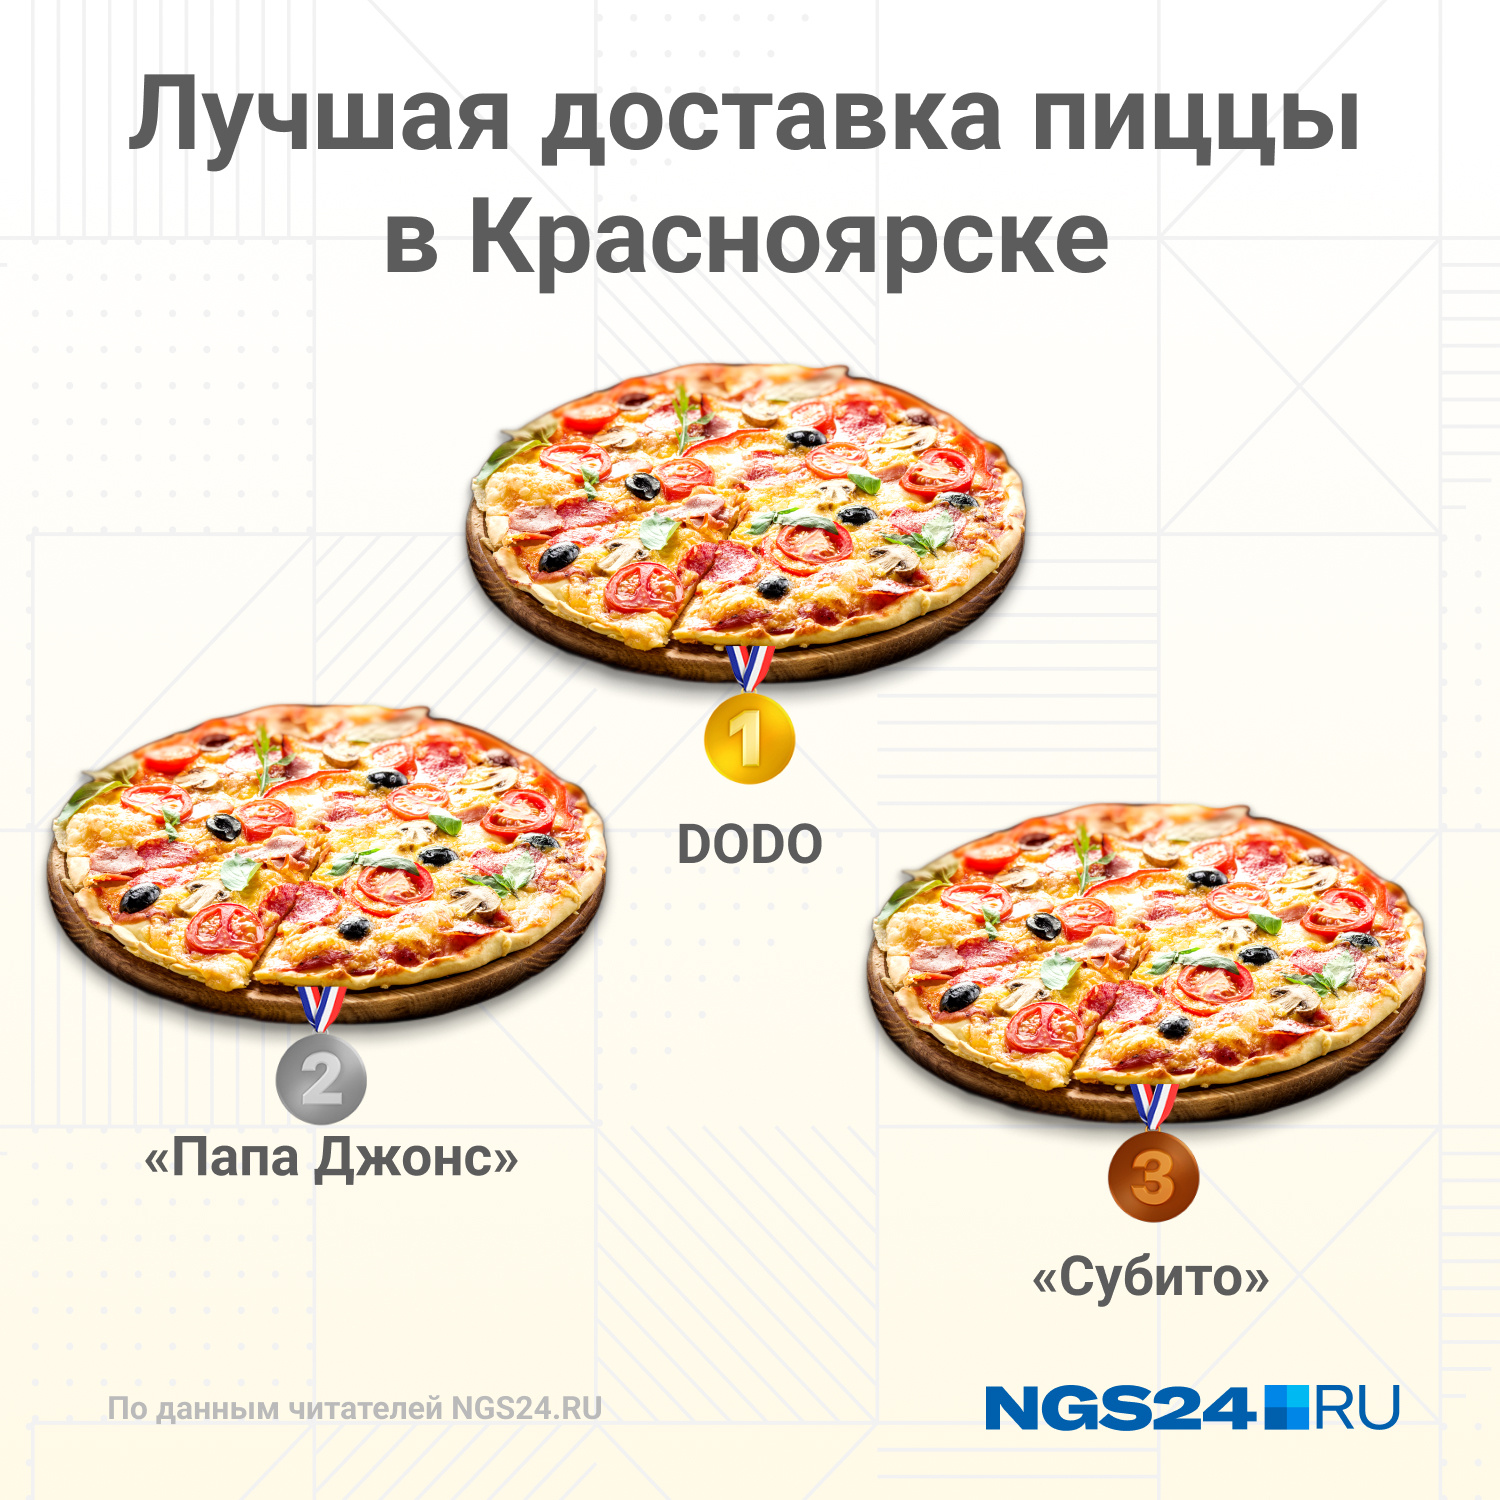 лучшая доставка пиццы в красноярске рейтинг фото 2